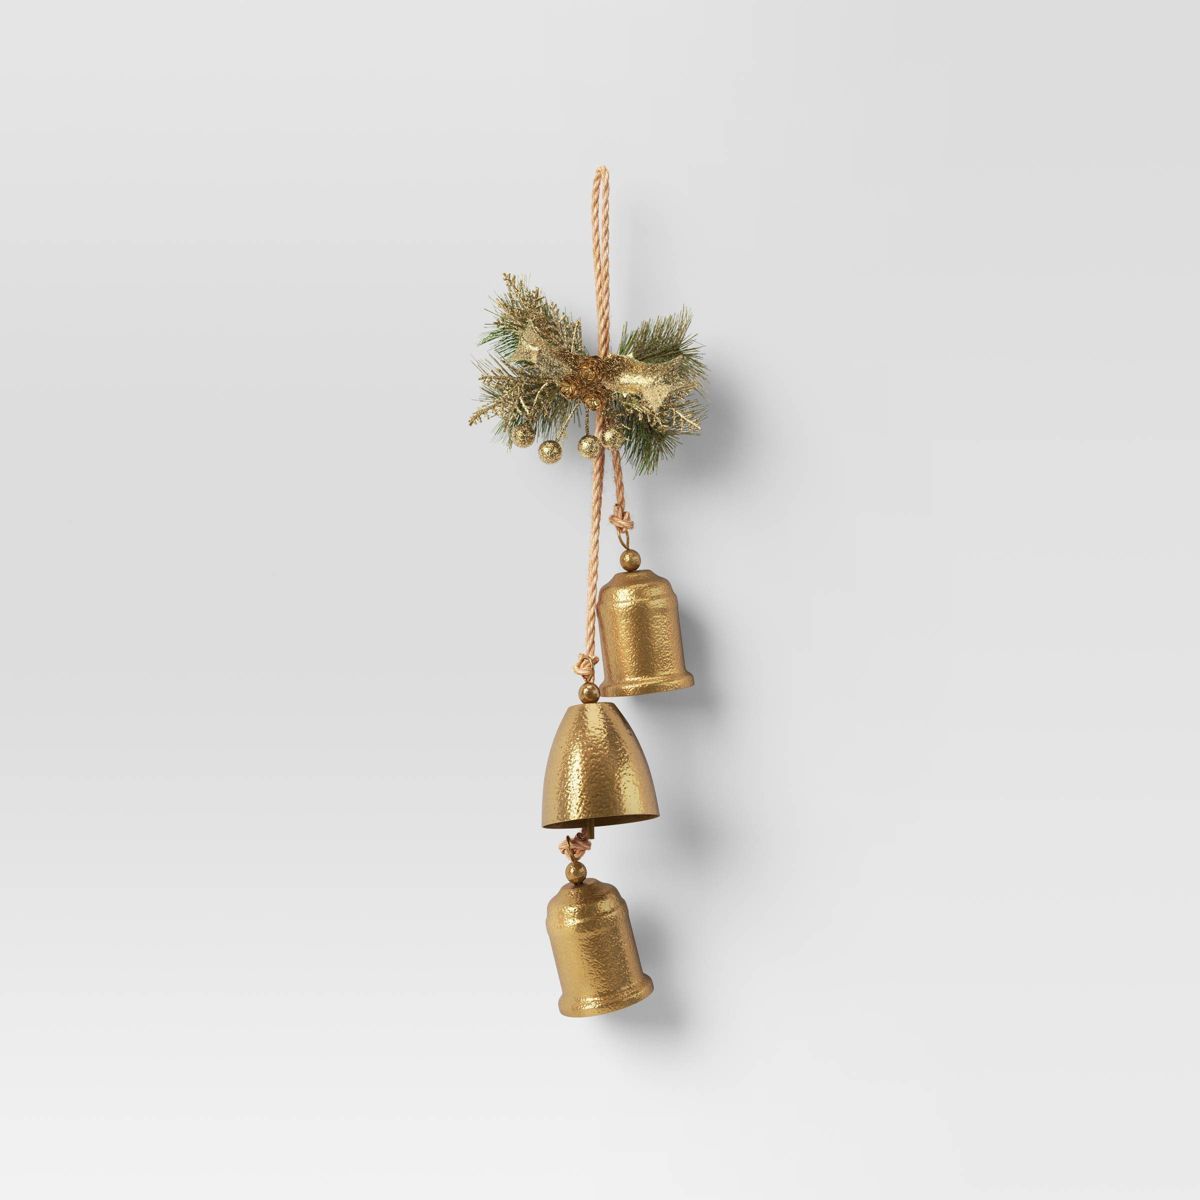 18" Metal Christmas Bells with Faux Greenery Door Décor Gold - Wondershop™ | Target